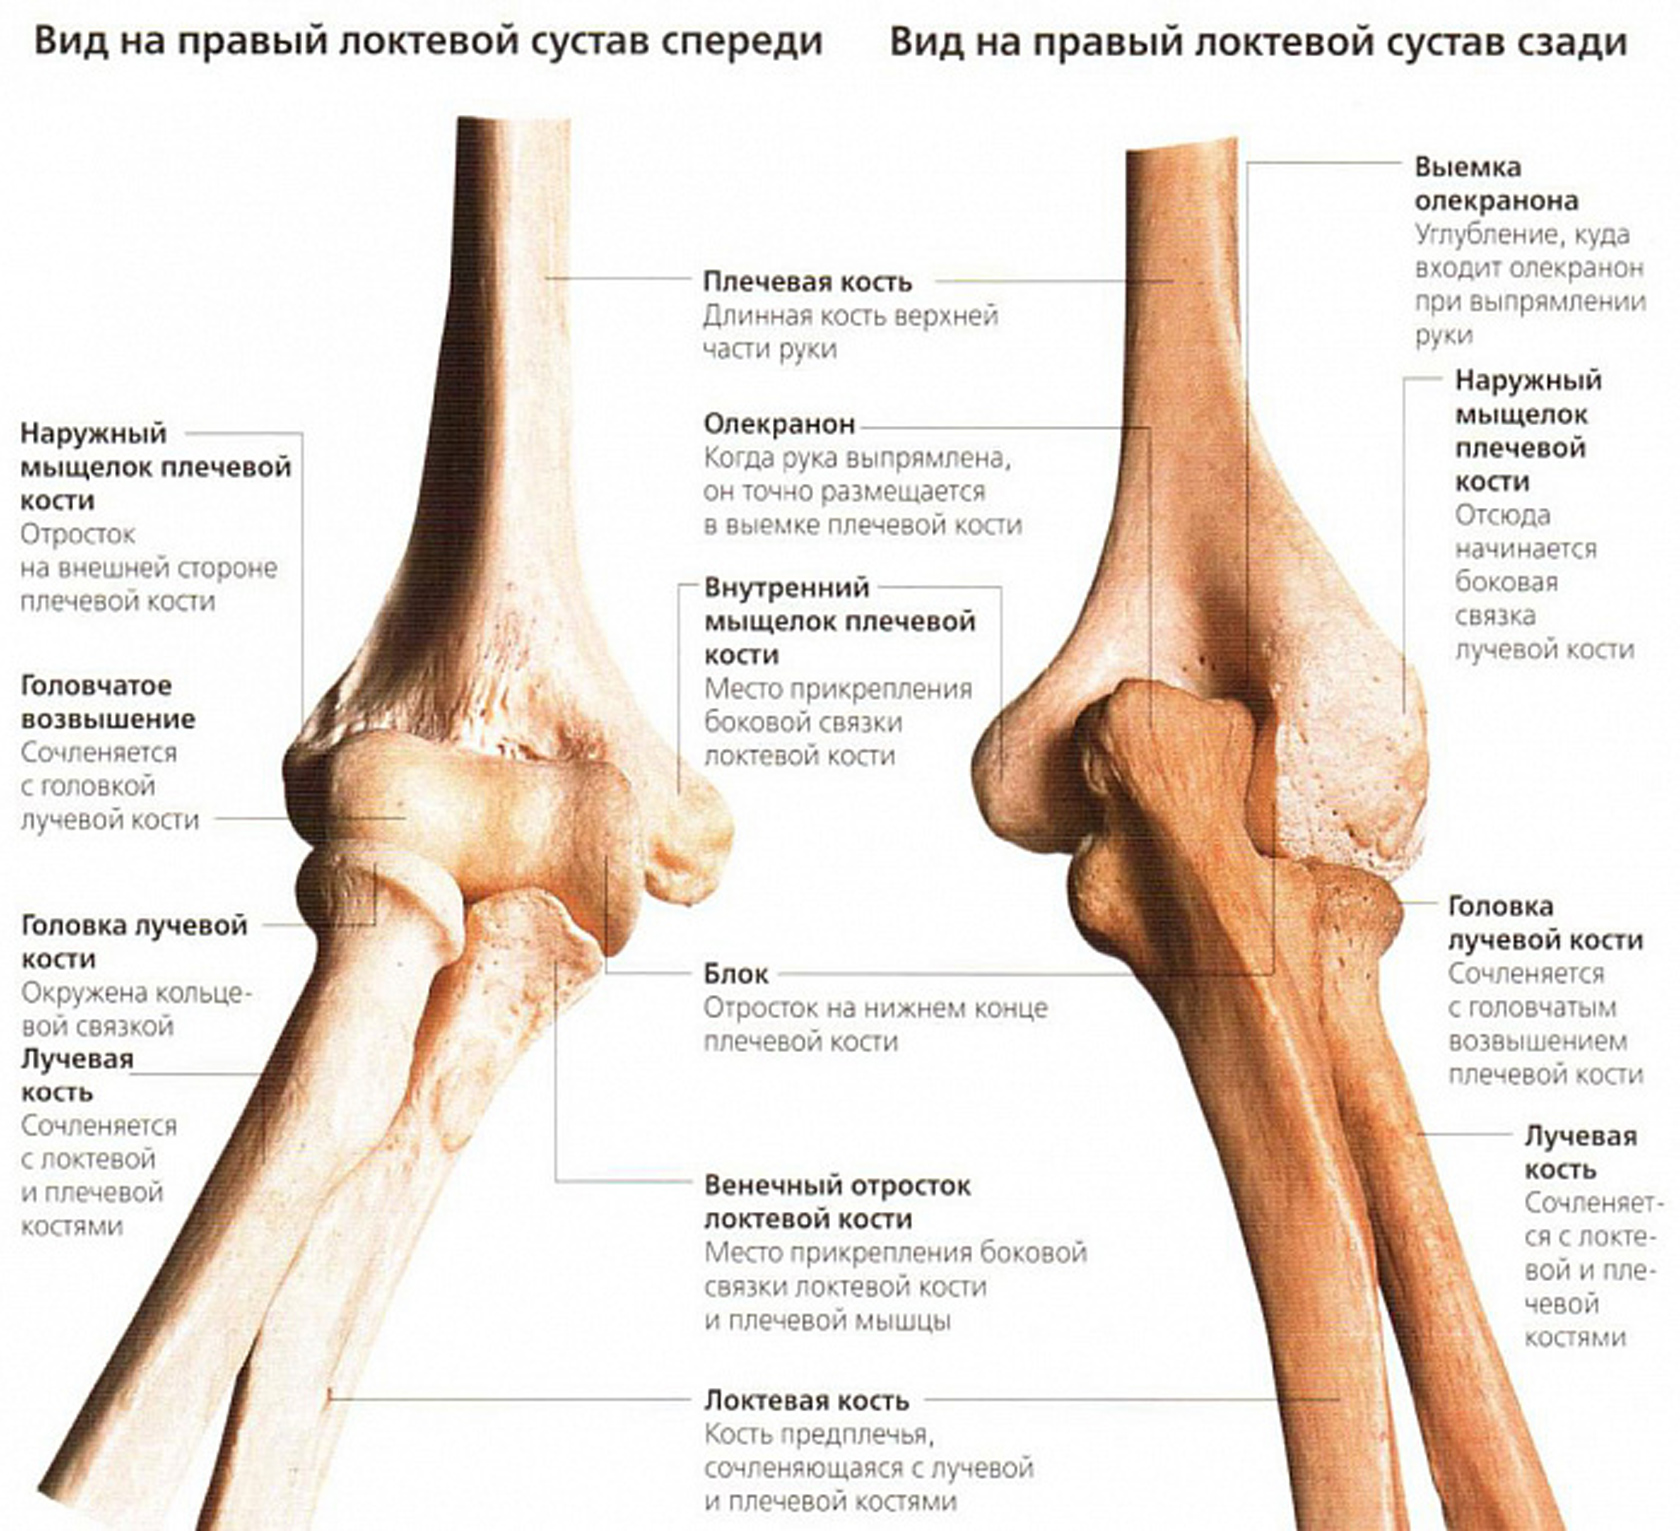 Медиальный мыщелок. Локтевой сустав анатомия строение кости. Венечный отросток локтевого сустава. Плечевая кость анатомия мыщелок. Кости составляющие локтевой сустав.